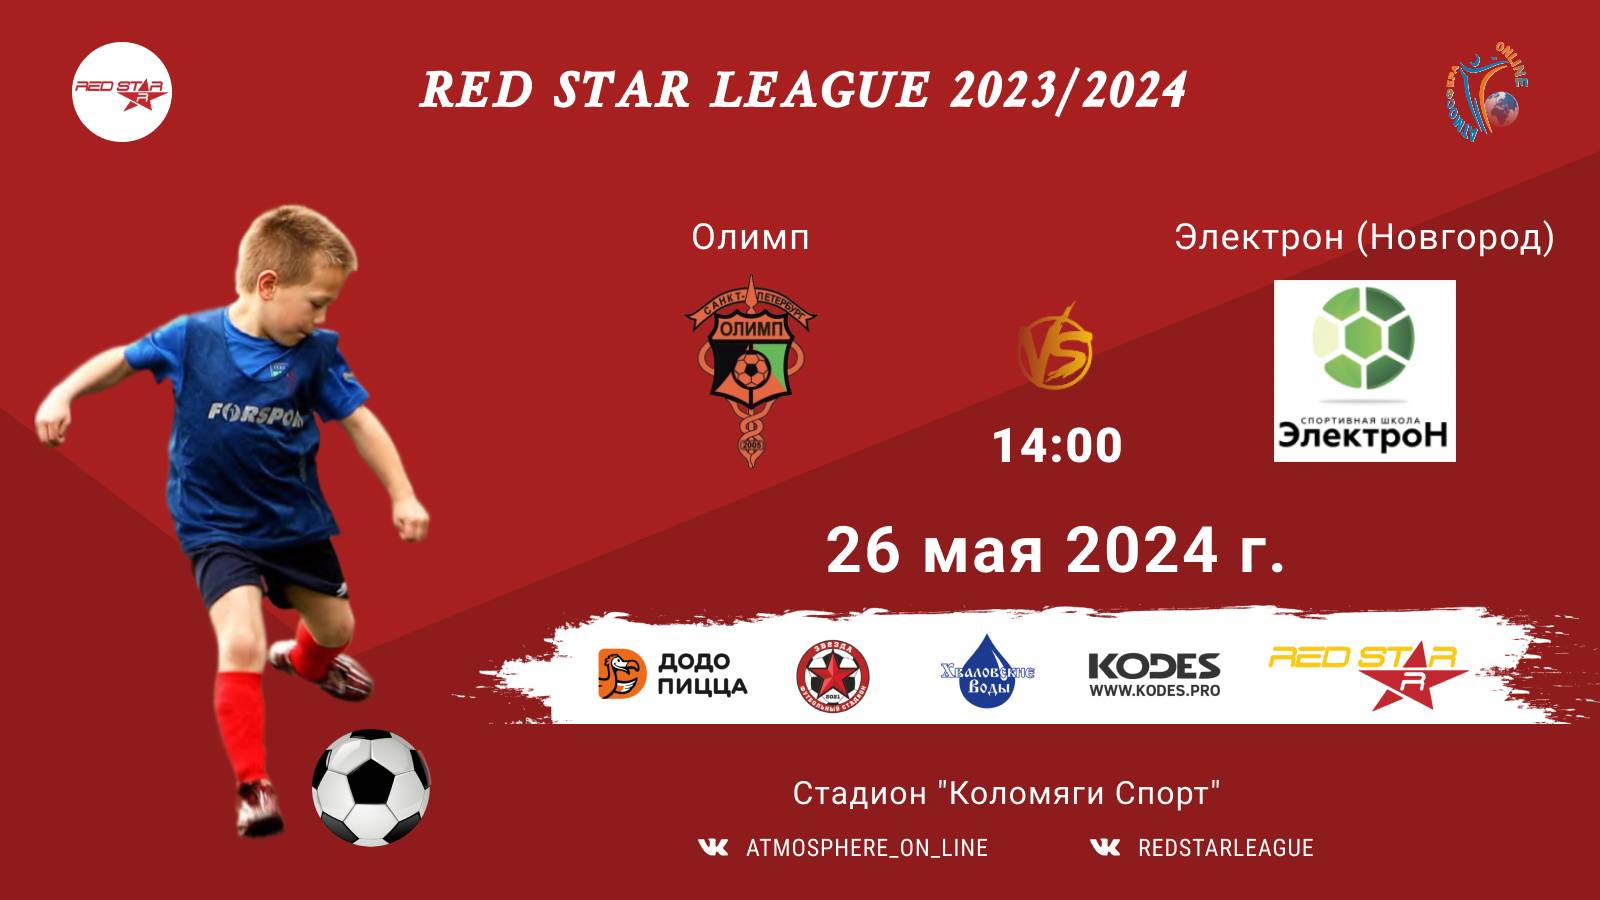 ФК "Олимп" - ФК "Электрон" (Новгород)/Red Star League, 26-05-2024 14:00